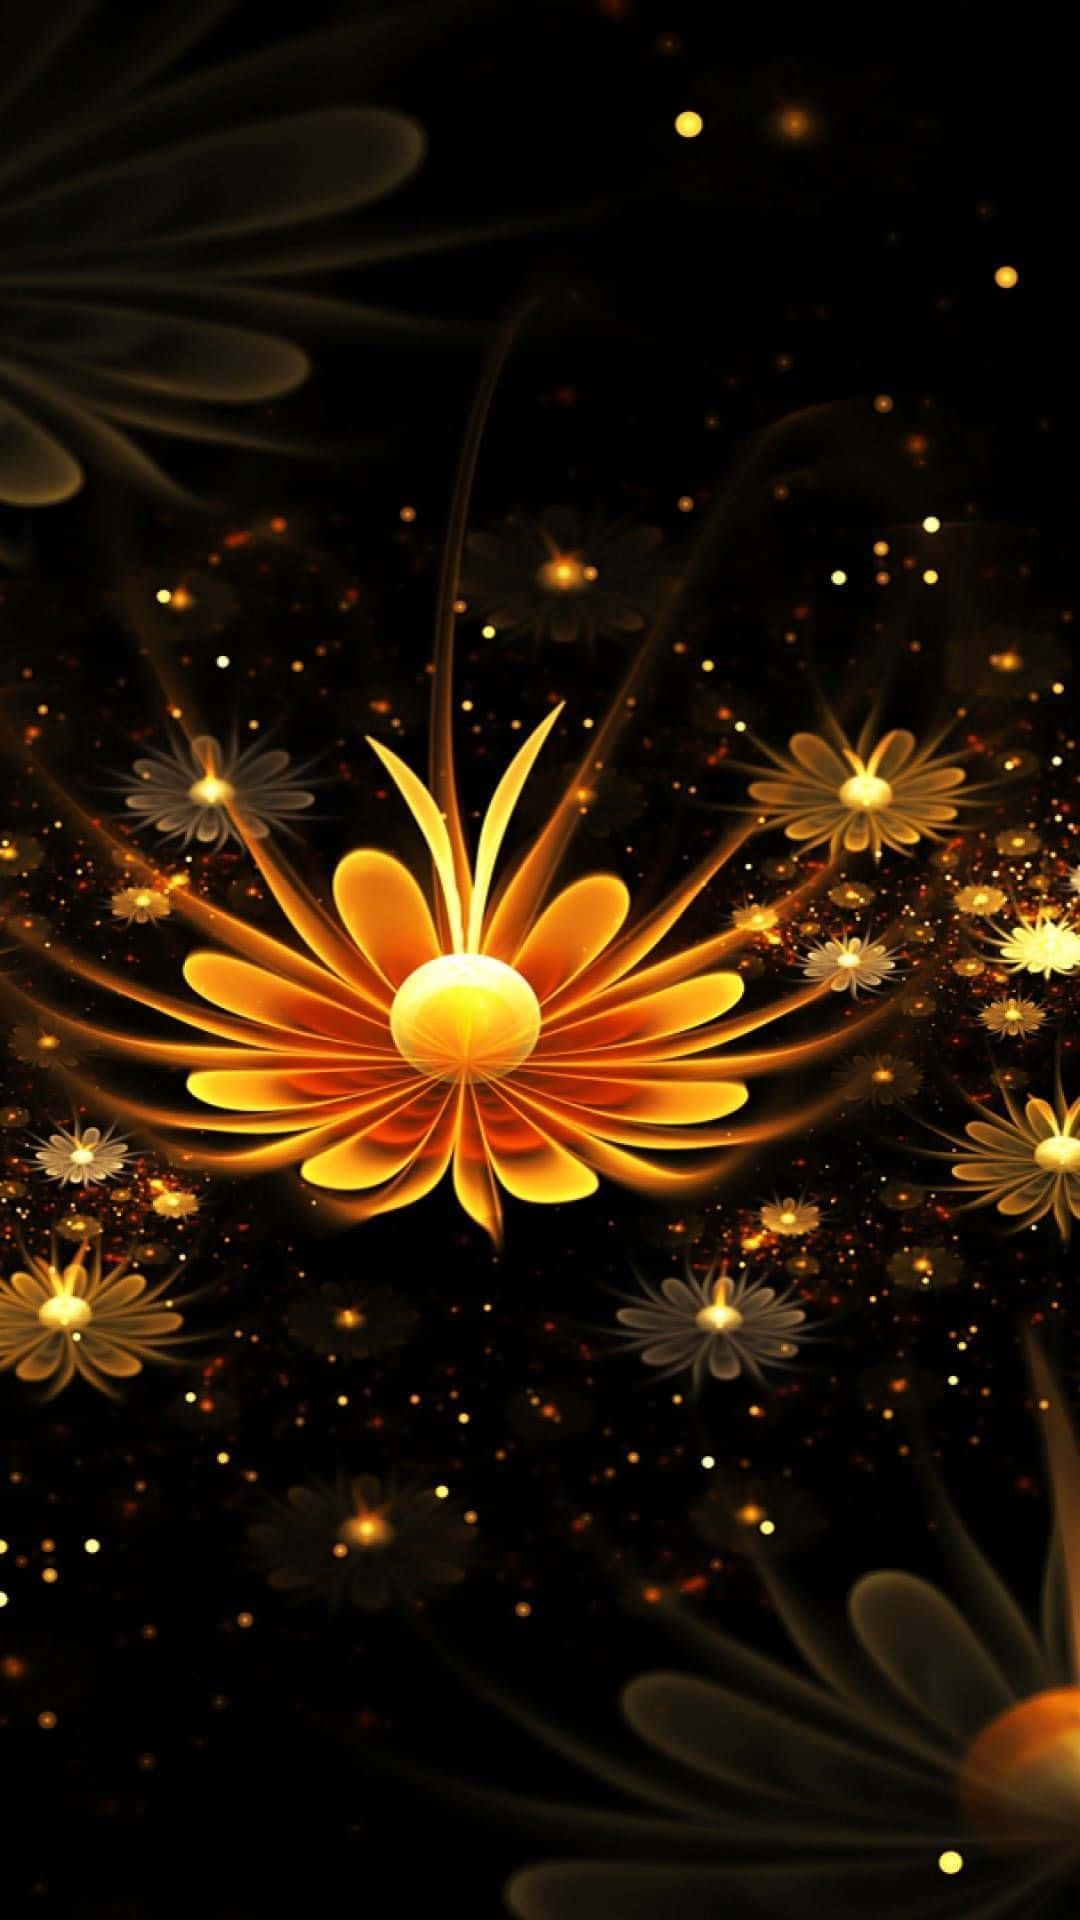 A vibrant 3D flower in full bloom Wallpaper